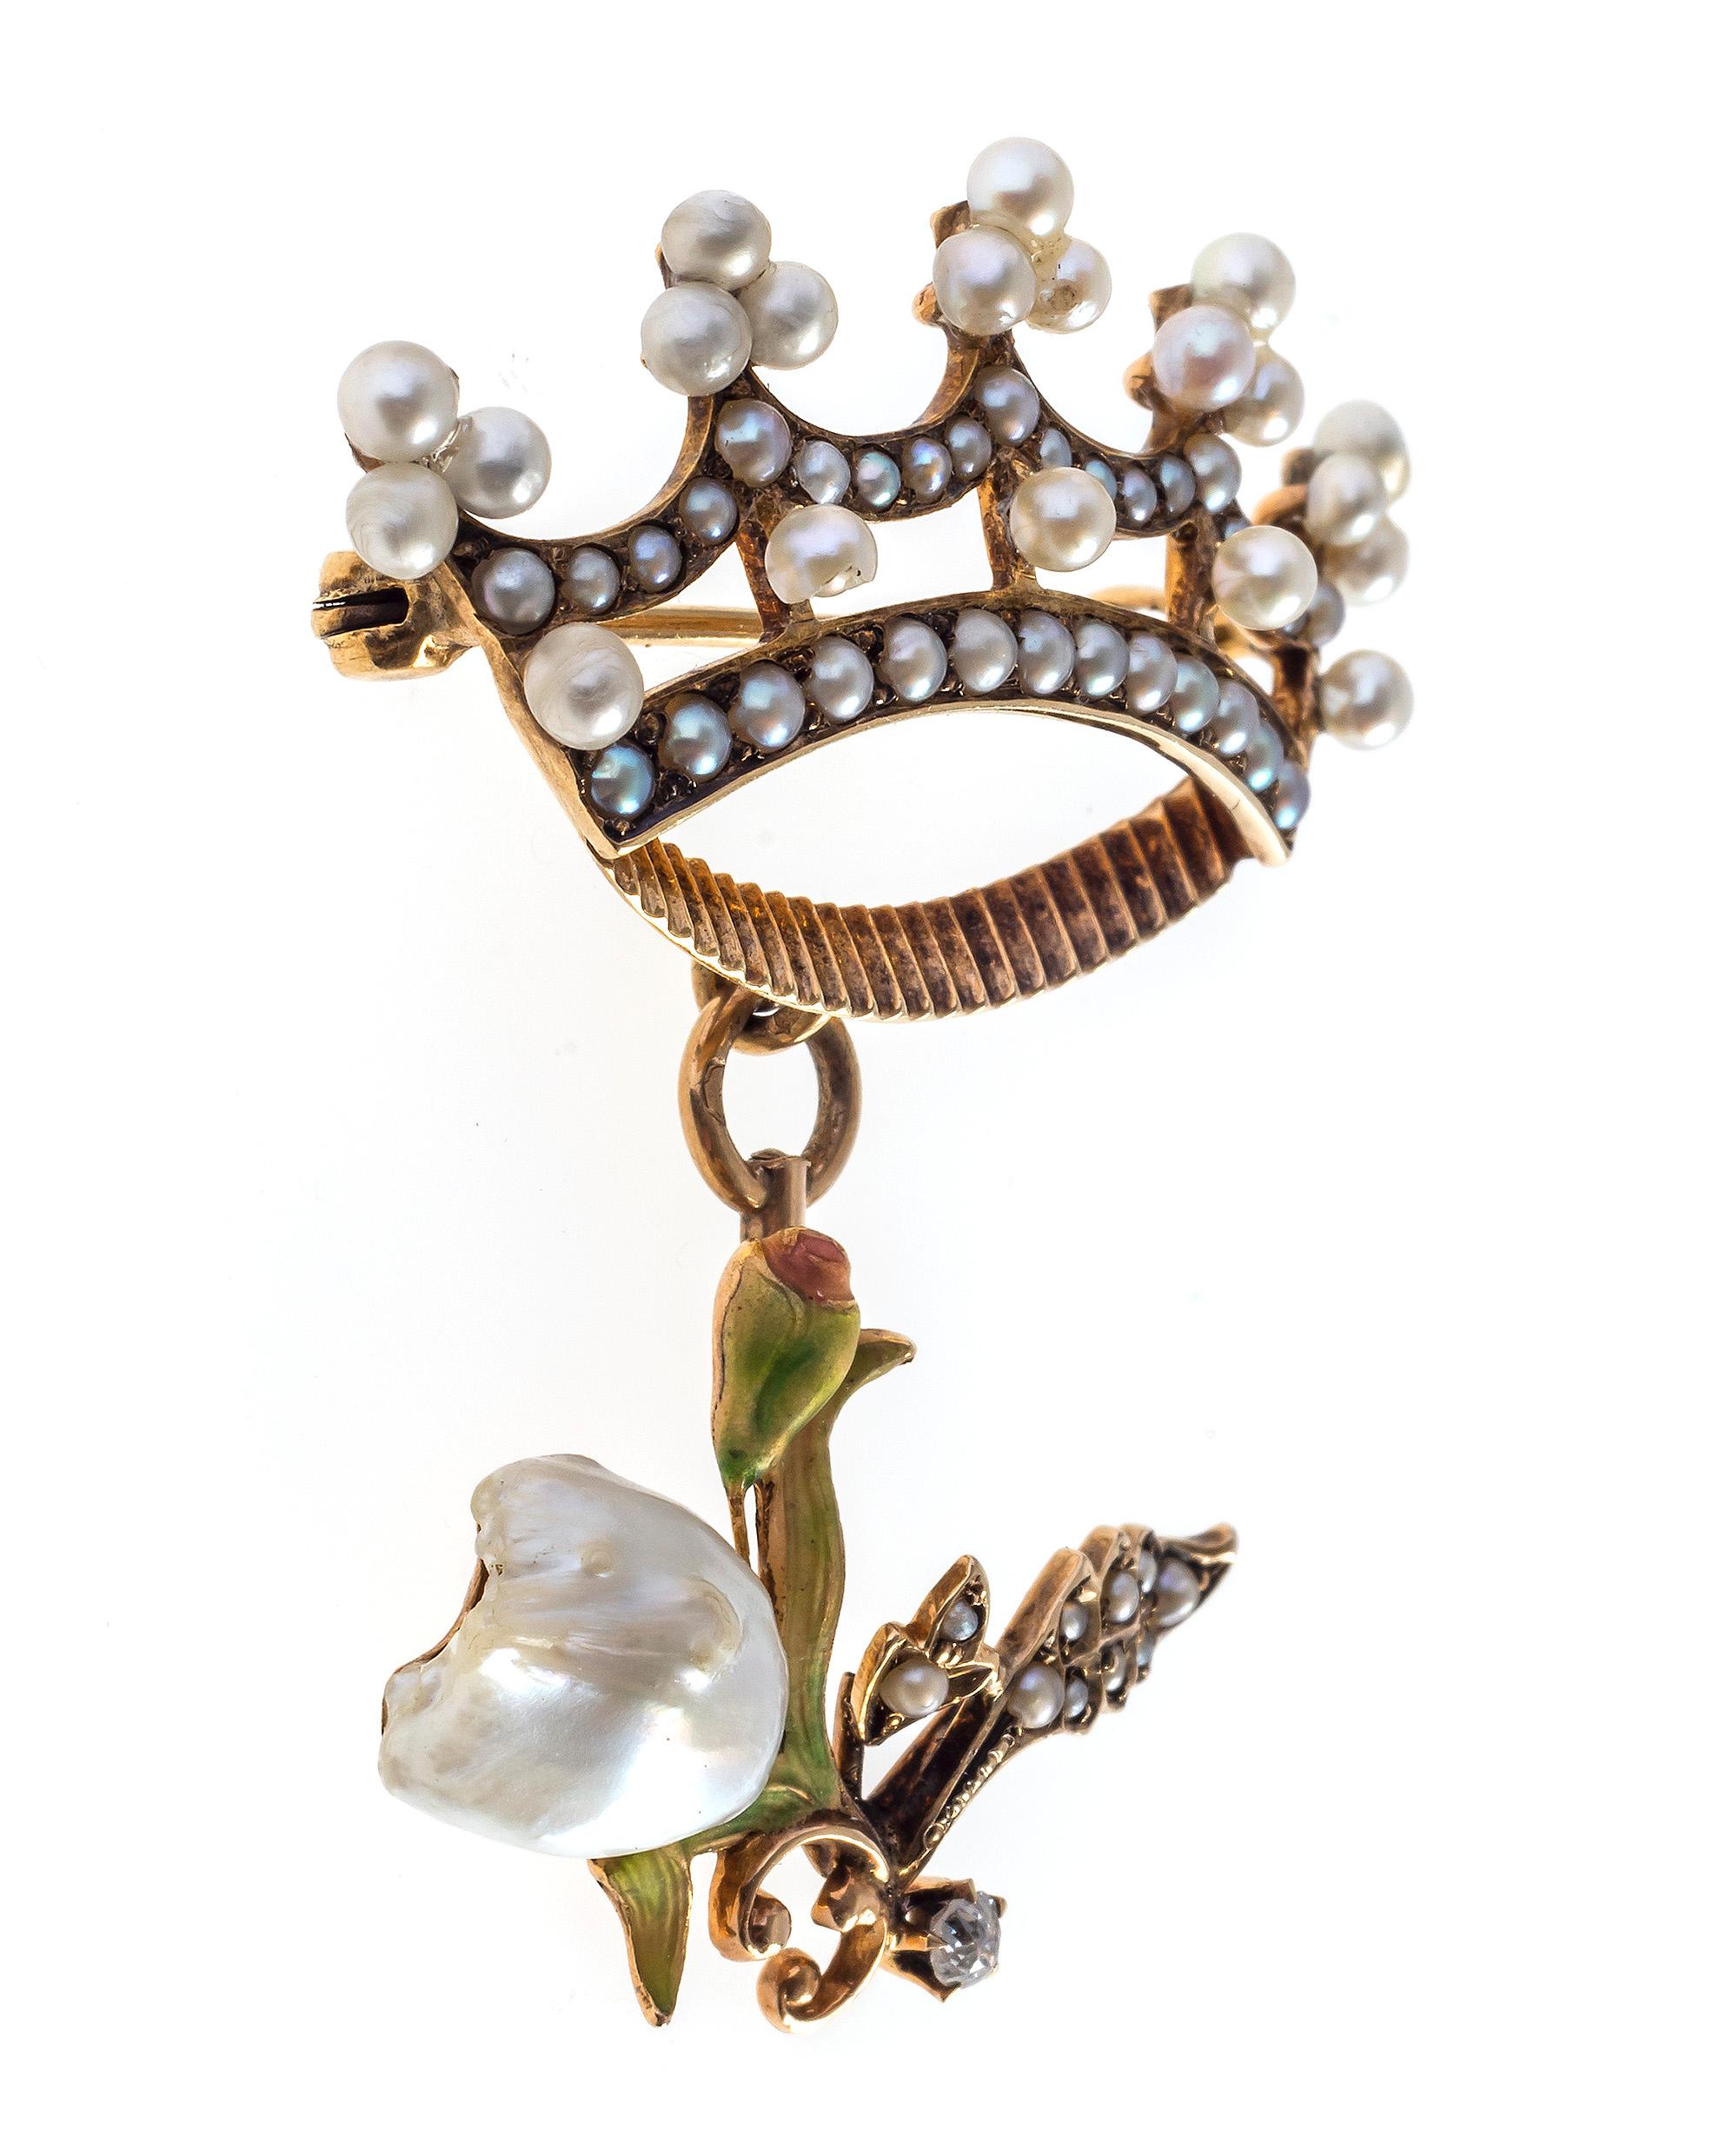 Une couronne sertie de fines perles orientales est montée en broche, à laquelle est suspendue une tulipe finement modelée. Une perle baroque naturelle, représentant la tête de la tulipe, est entourée de fines feuilles et d'un bouton de fleur décorés